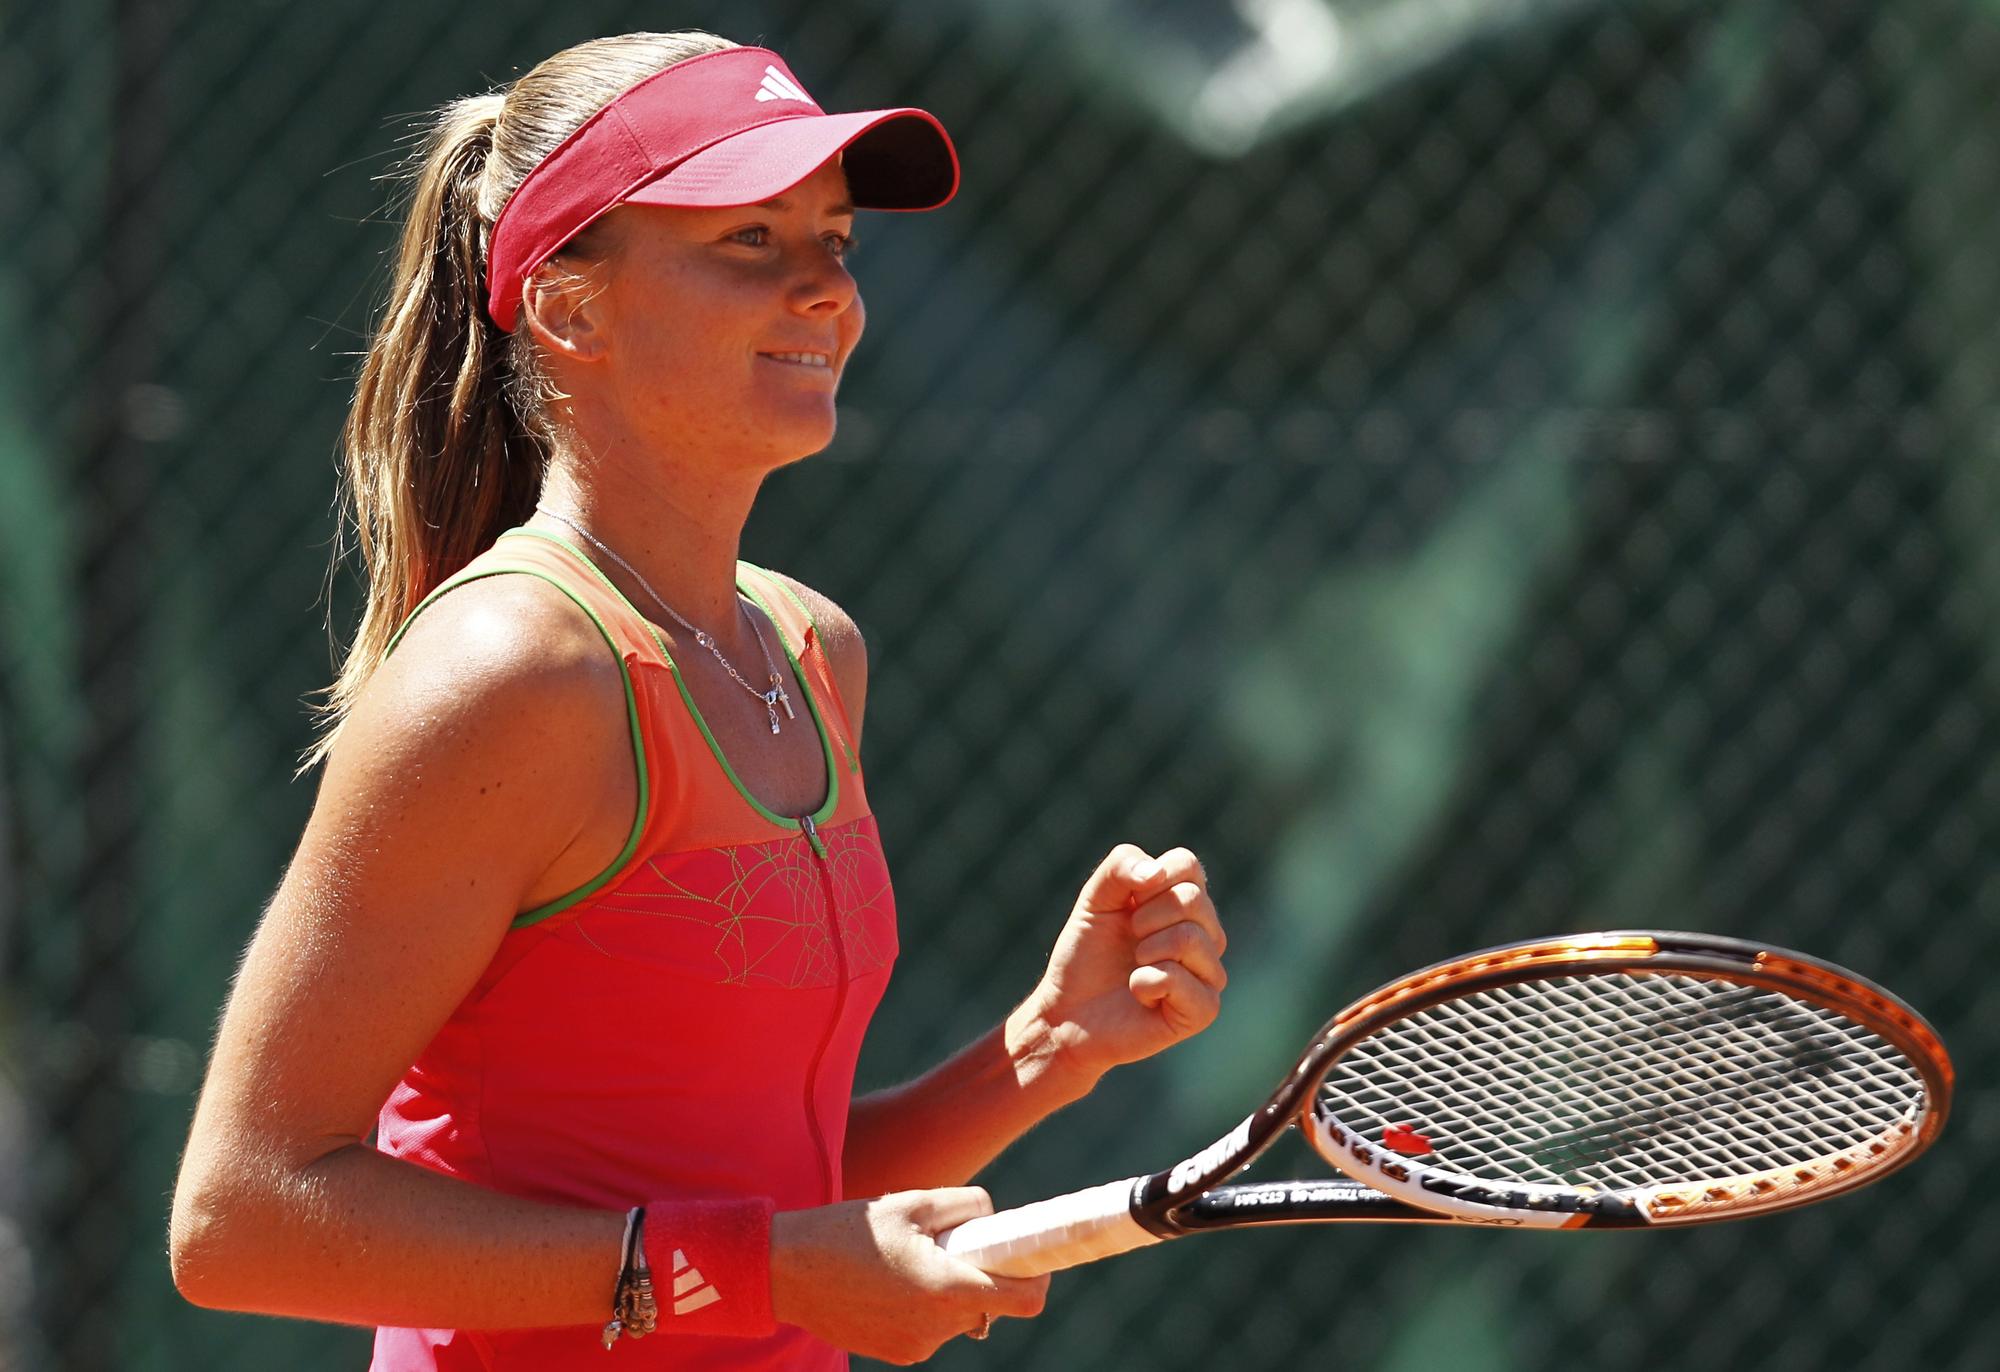 Daniela Hantuchova, ex-membre du top-10 WTA, aura sa chance face à Wozniacki. [Reuters - Charles Platiau]